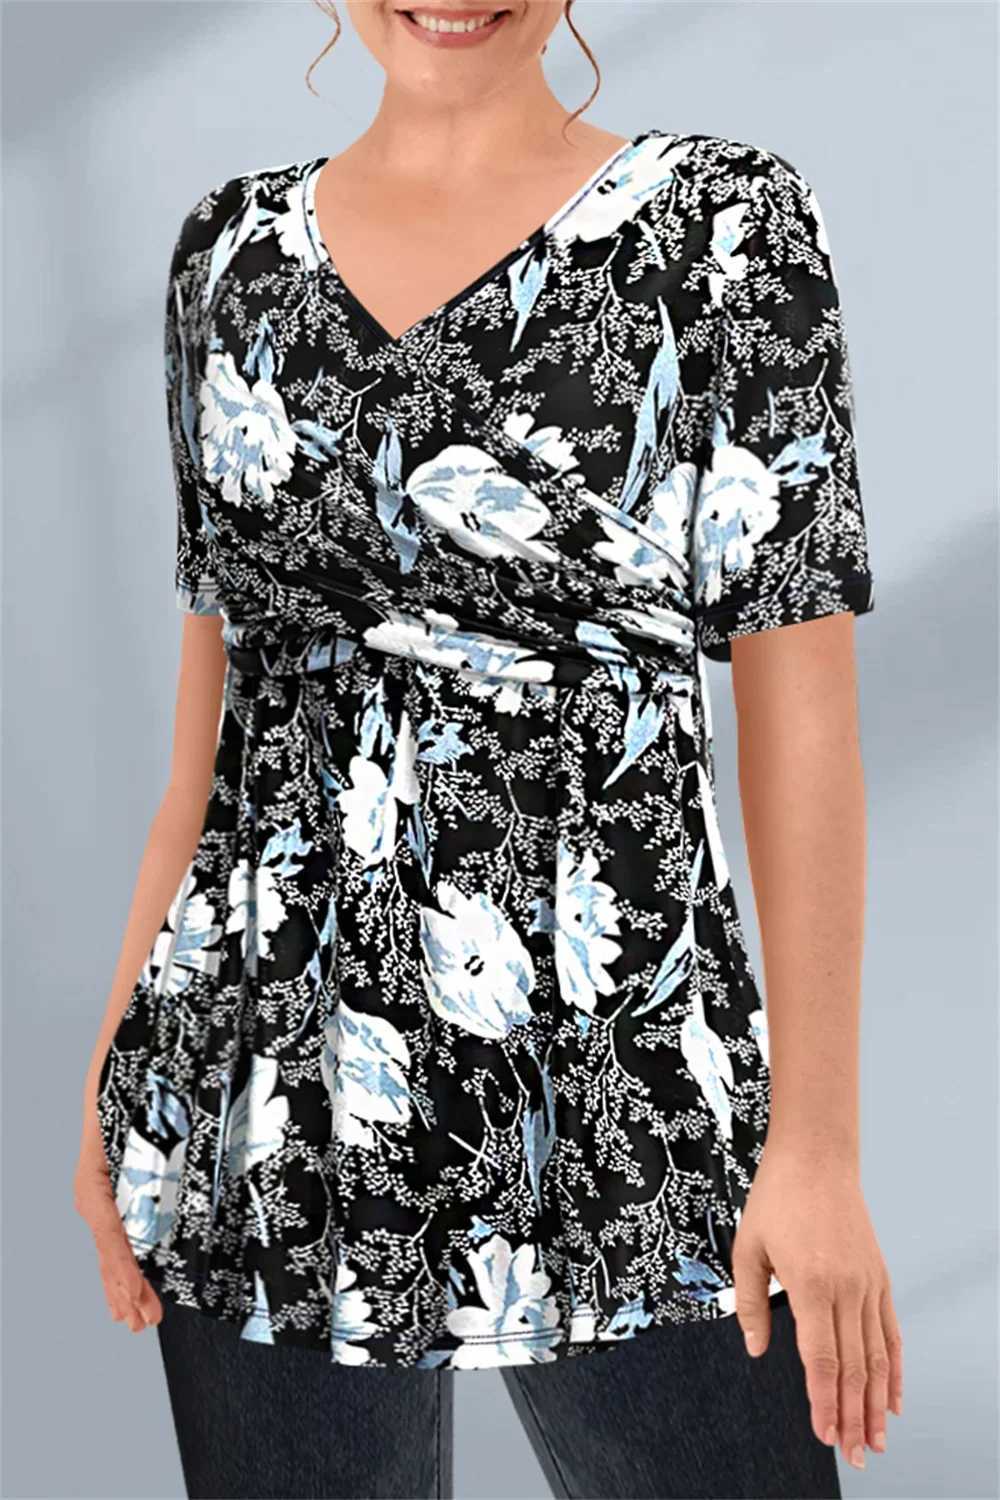 Damska koszulka damska damska krótkie rękawa plus swobodne czarne kwiatowy nadruk krzyżowy węzeł plisowany bluzka w dekolcie letnia koszulka żeńska koszulka top femmel2403